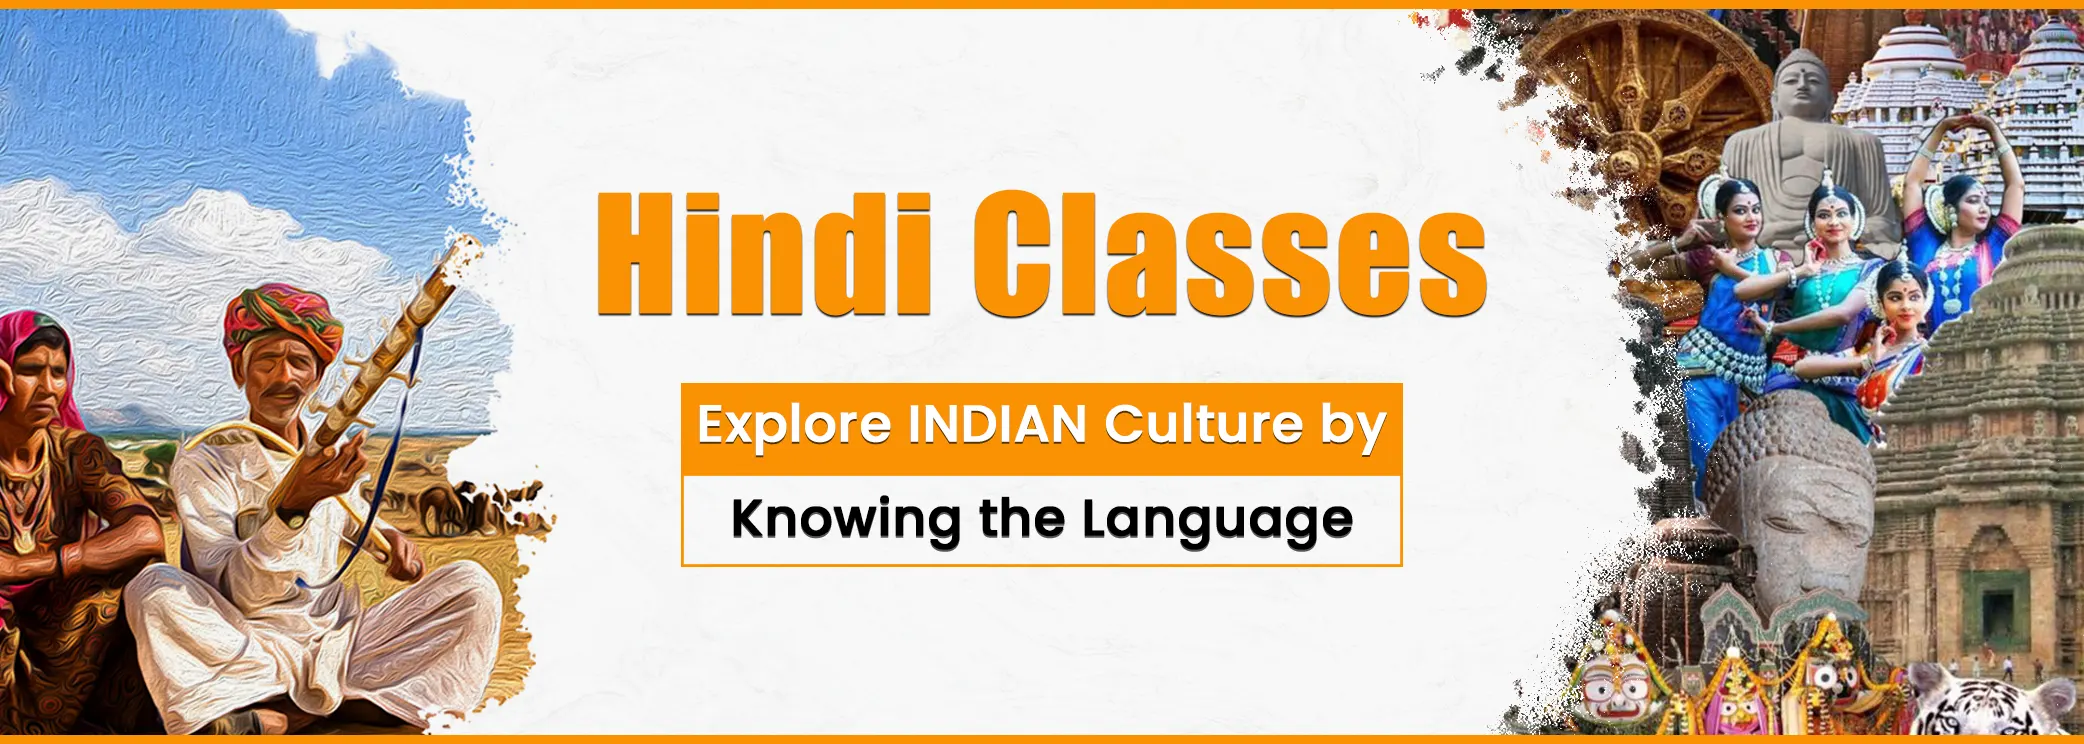 Hindi Classes- Explore Indian Culture